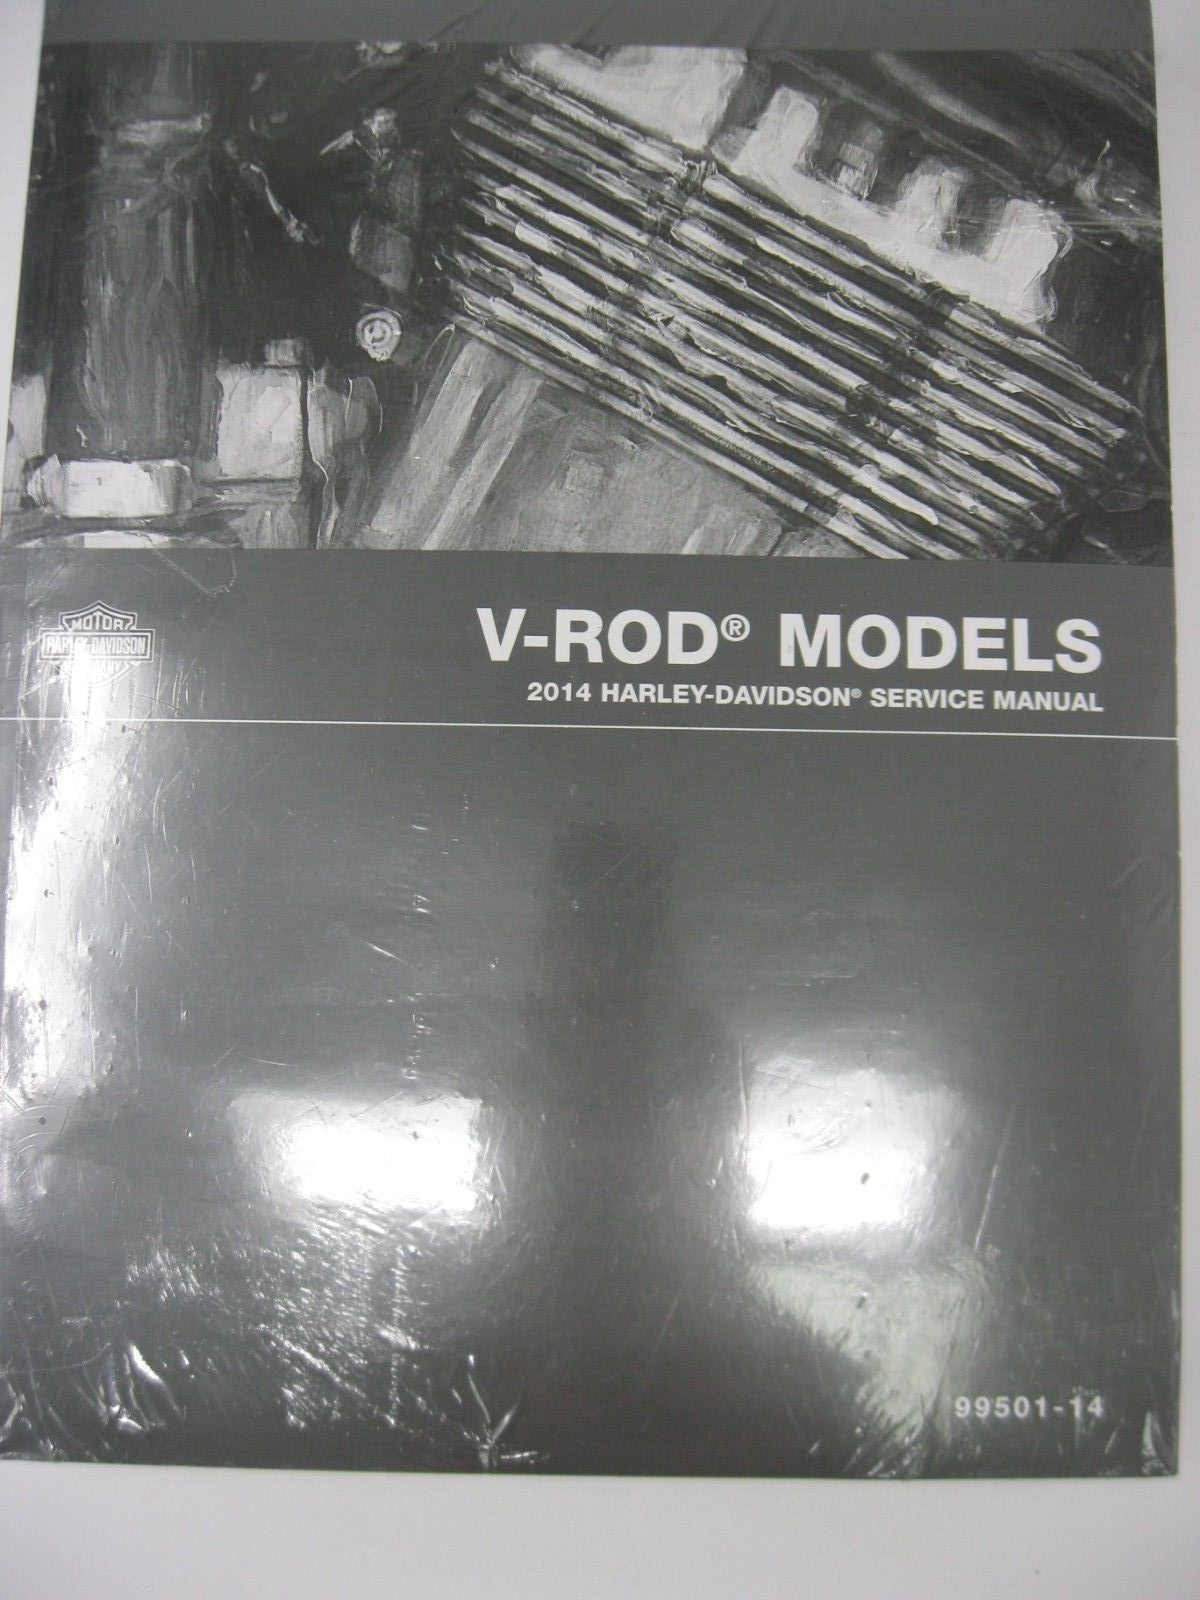 Harley-Davidson V-Rod Models 2014 Service Manual 99501-14